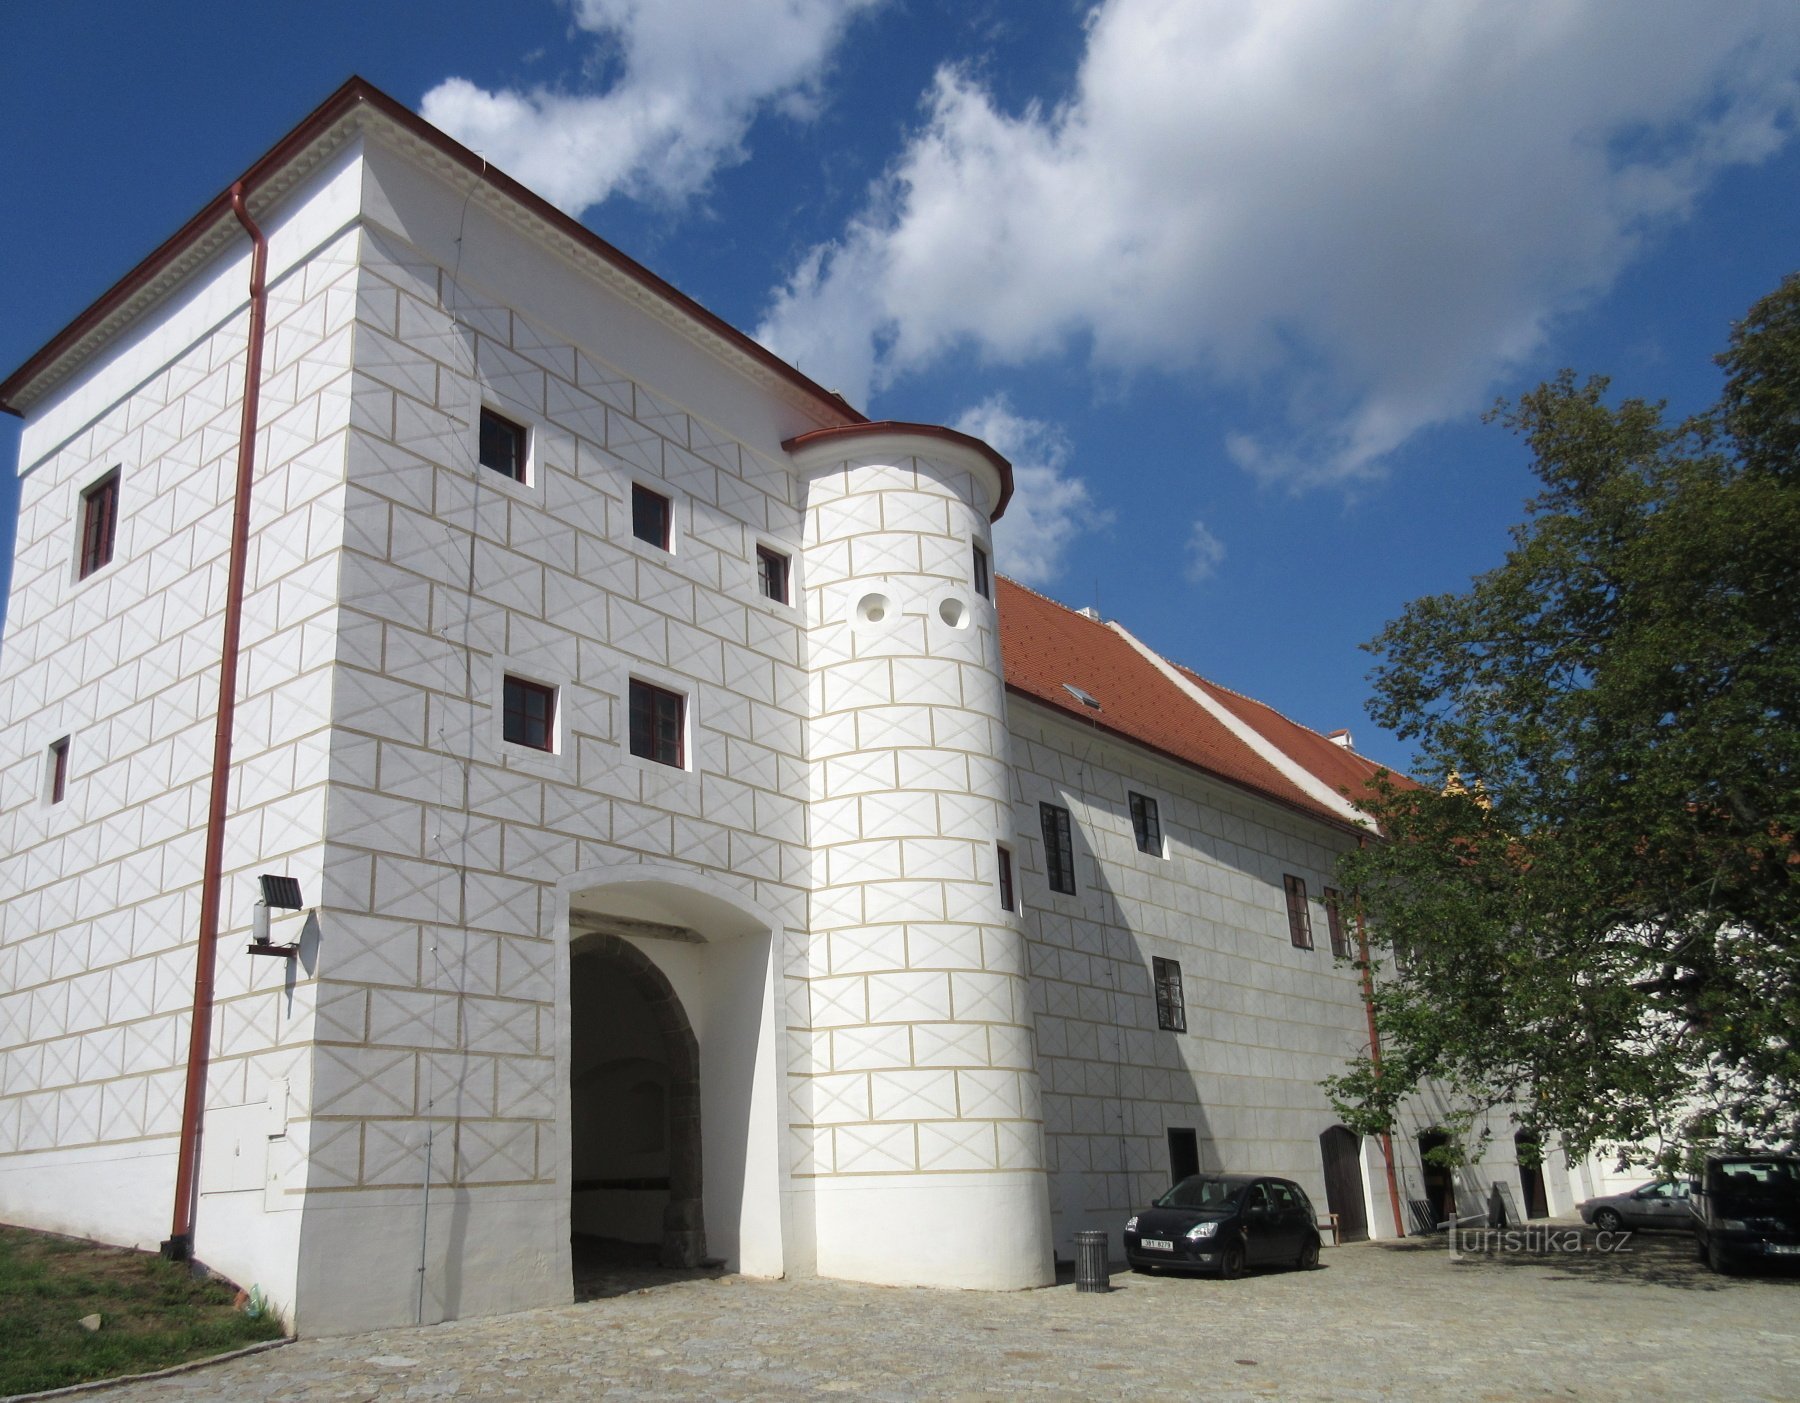 Třebíč – linna, entinen benediktiiniläisluostari, nykyään museo